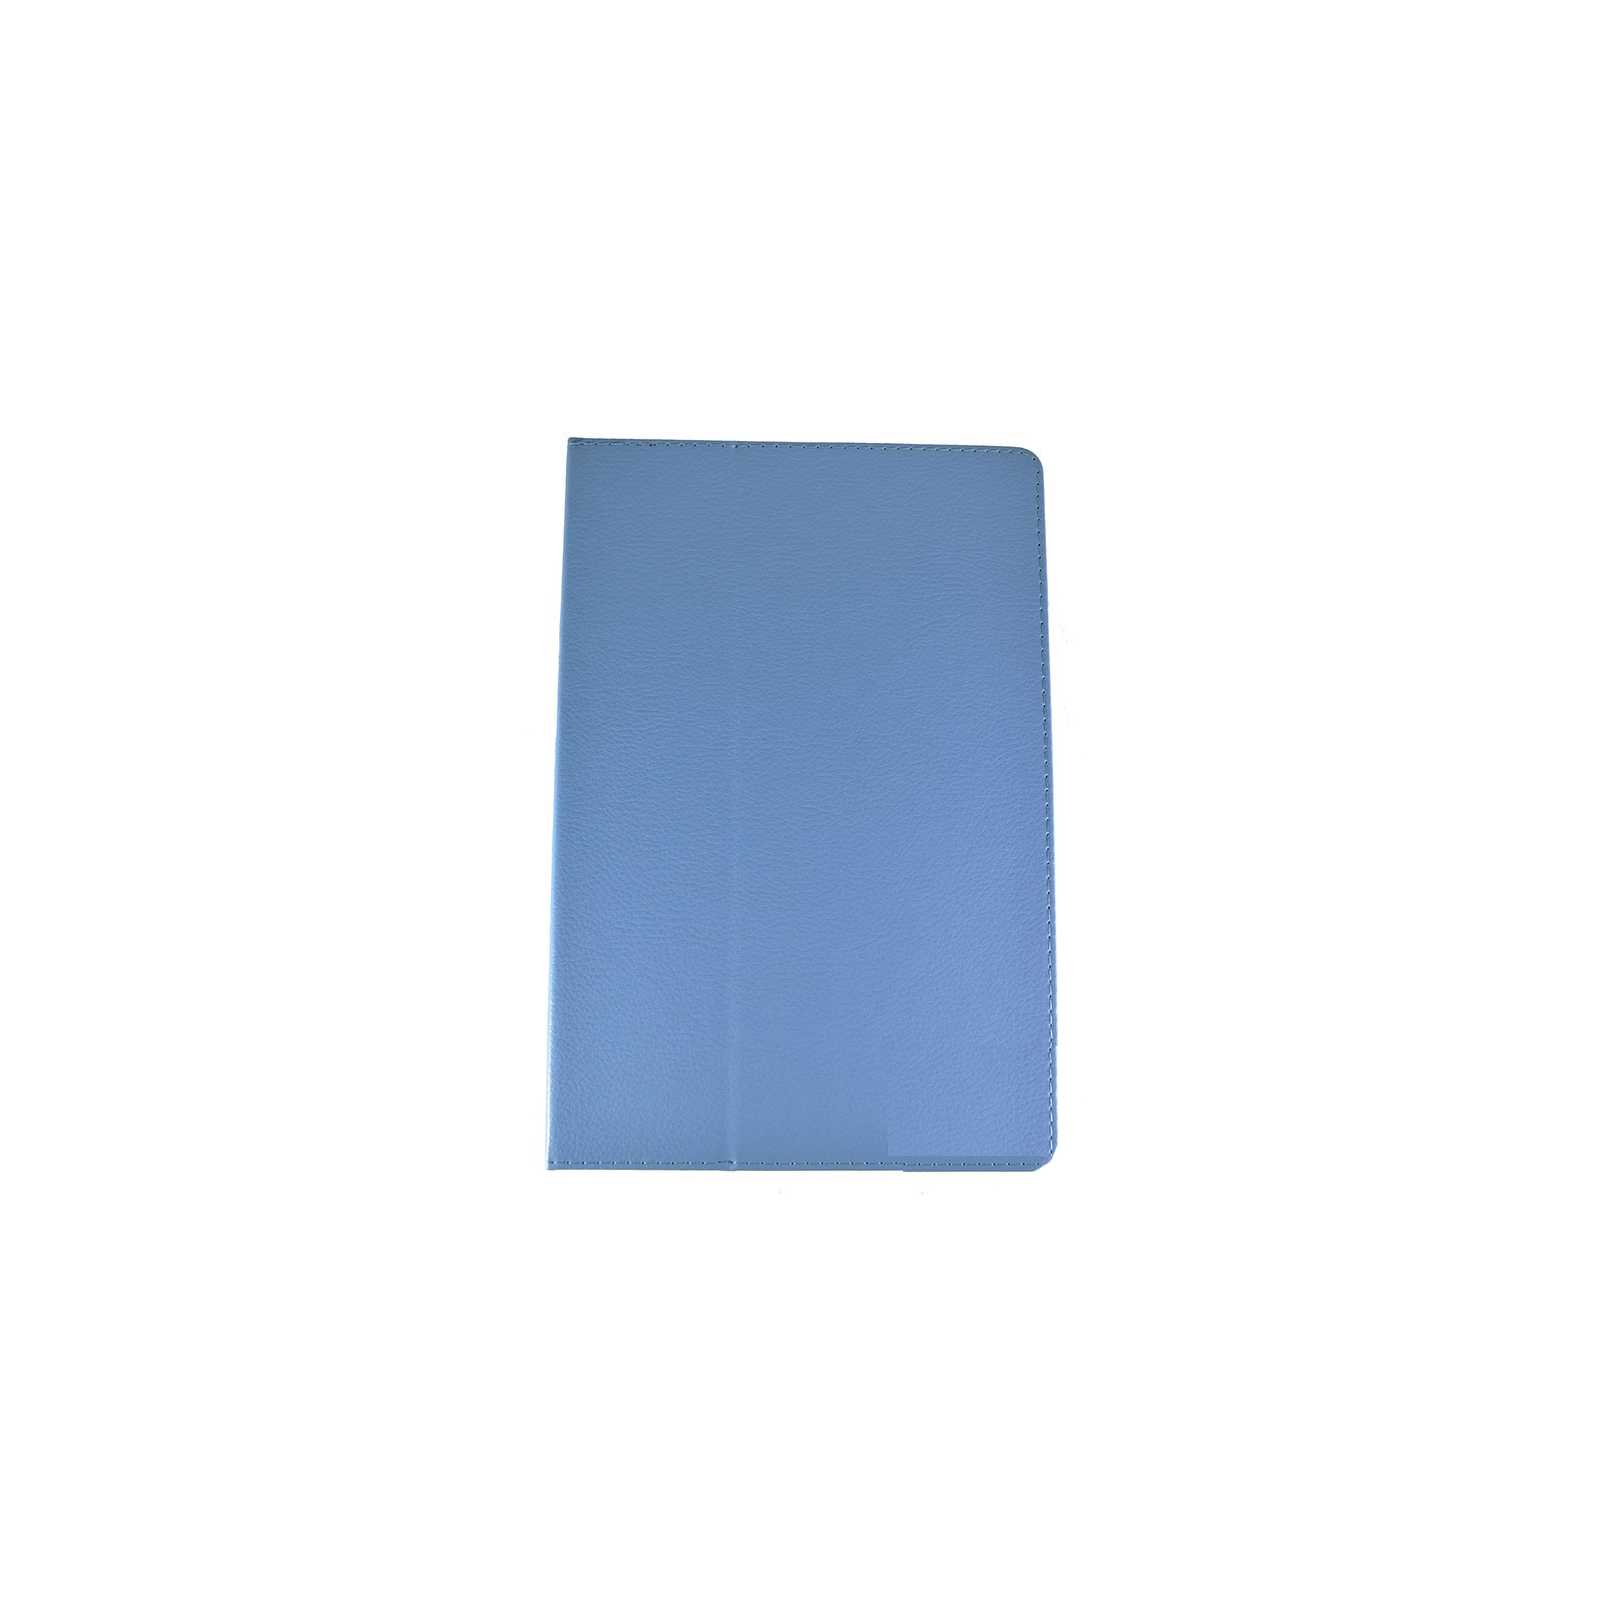 Чехол для планшета Pro-case 10" Pro-case Lenovo A10-70 A7600 10" blue (PC A10-70 A7600 blue)